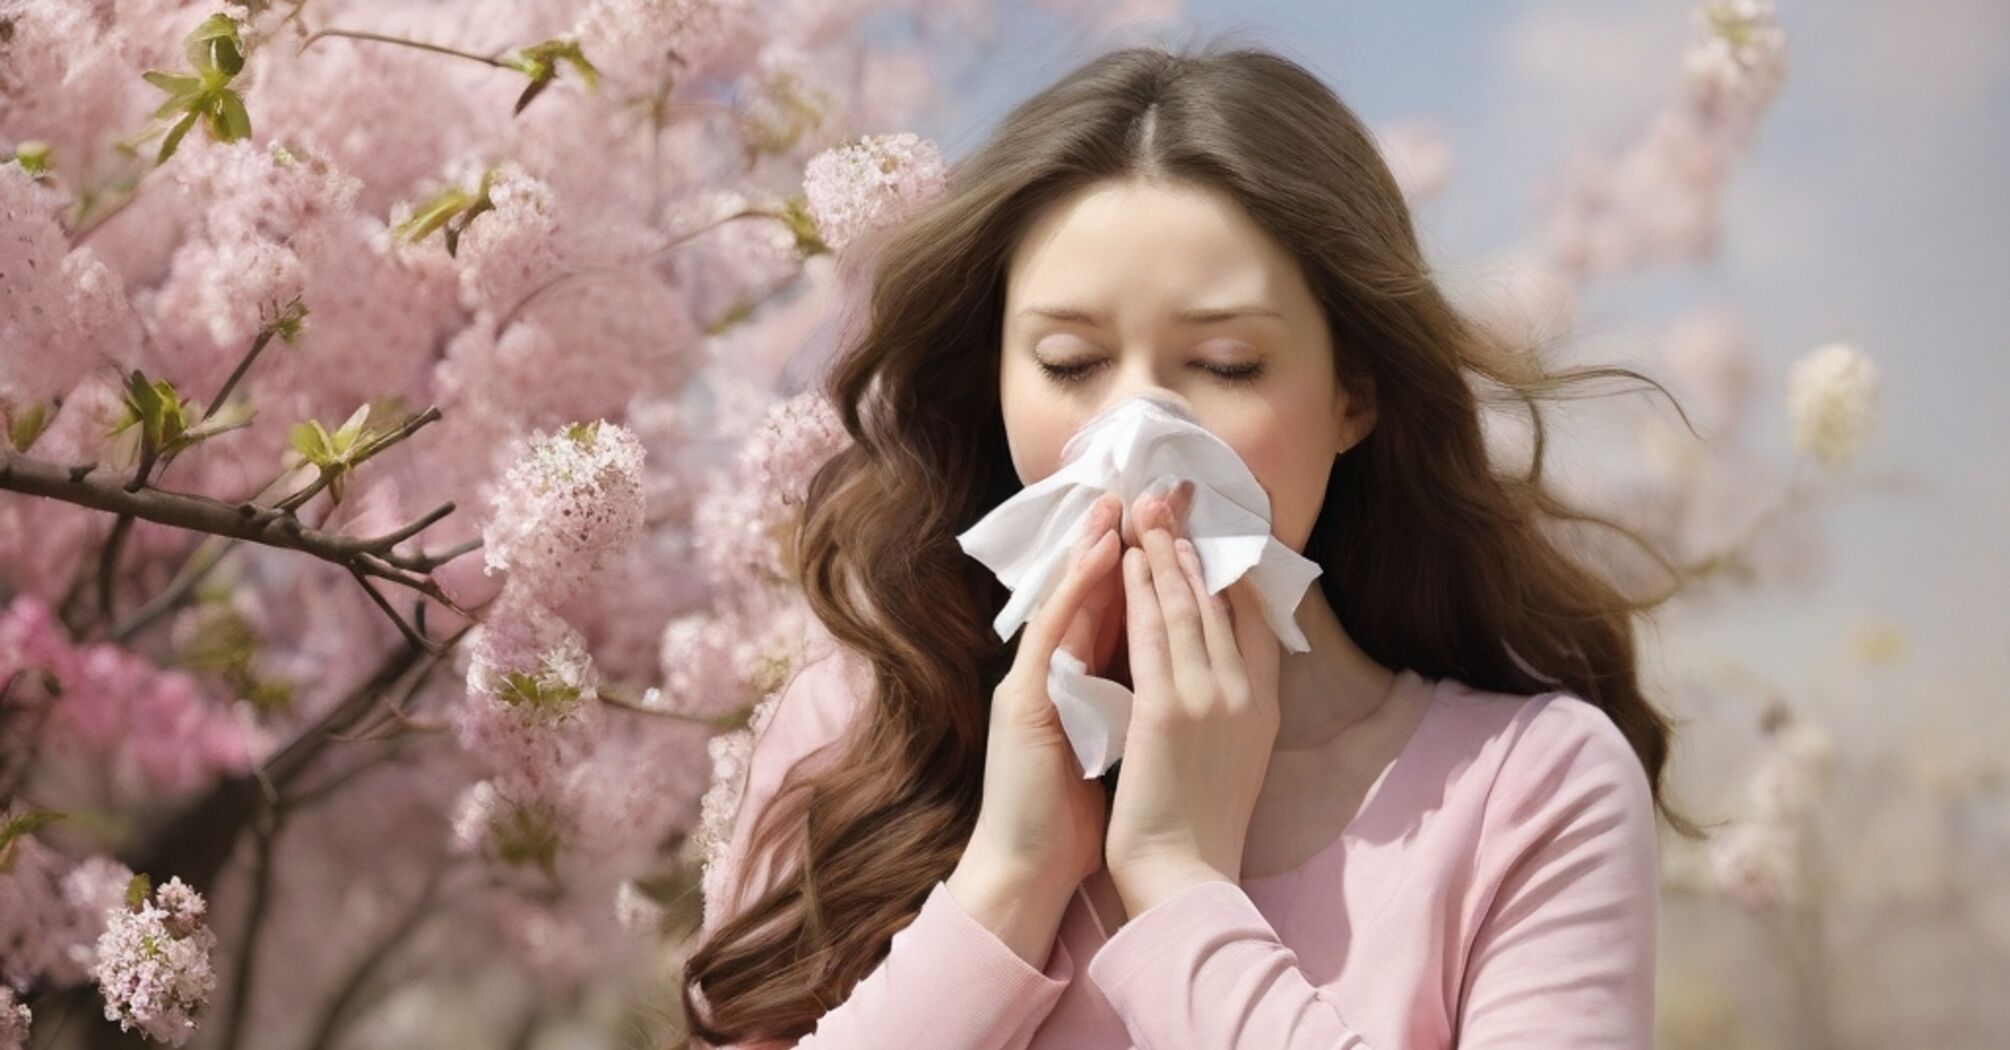 Початок сезону алергічних реакцій: способи уникнення неприємних проявів